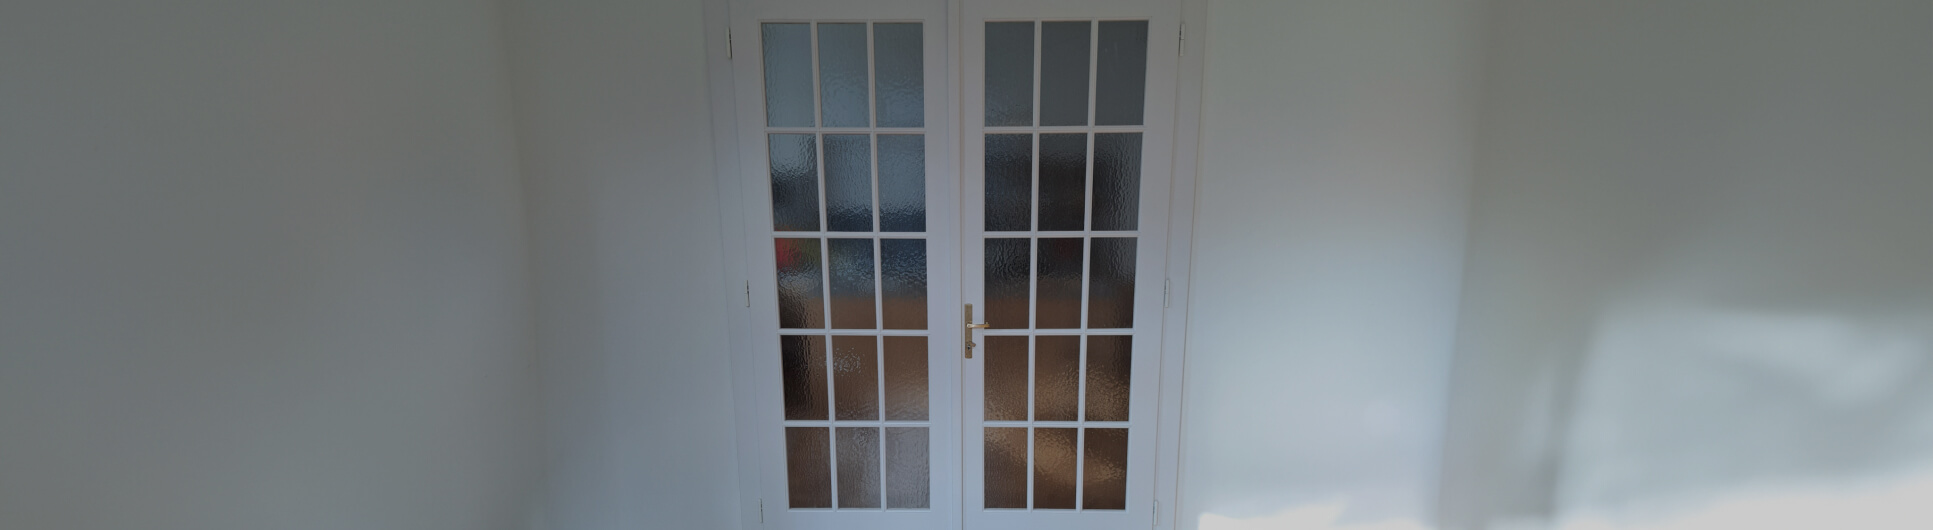 Dřevěné interiérové dveře, obložkové zárubně